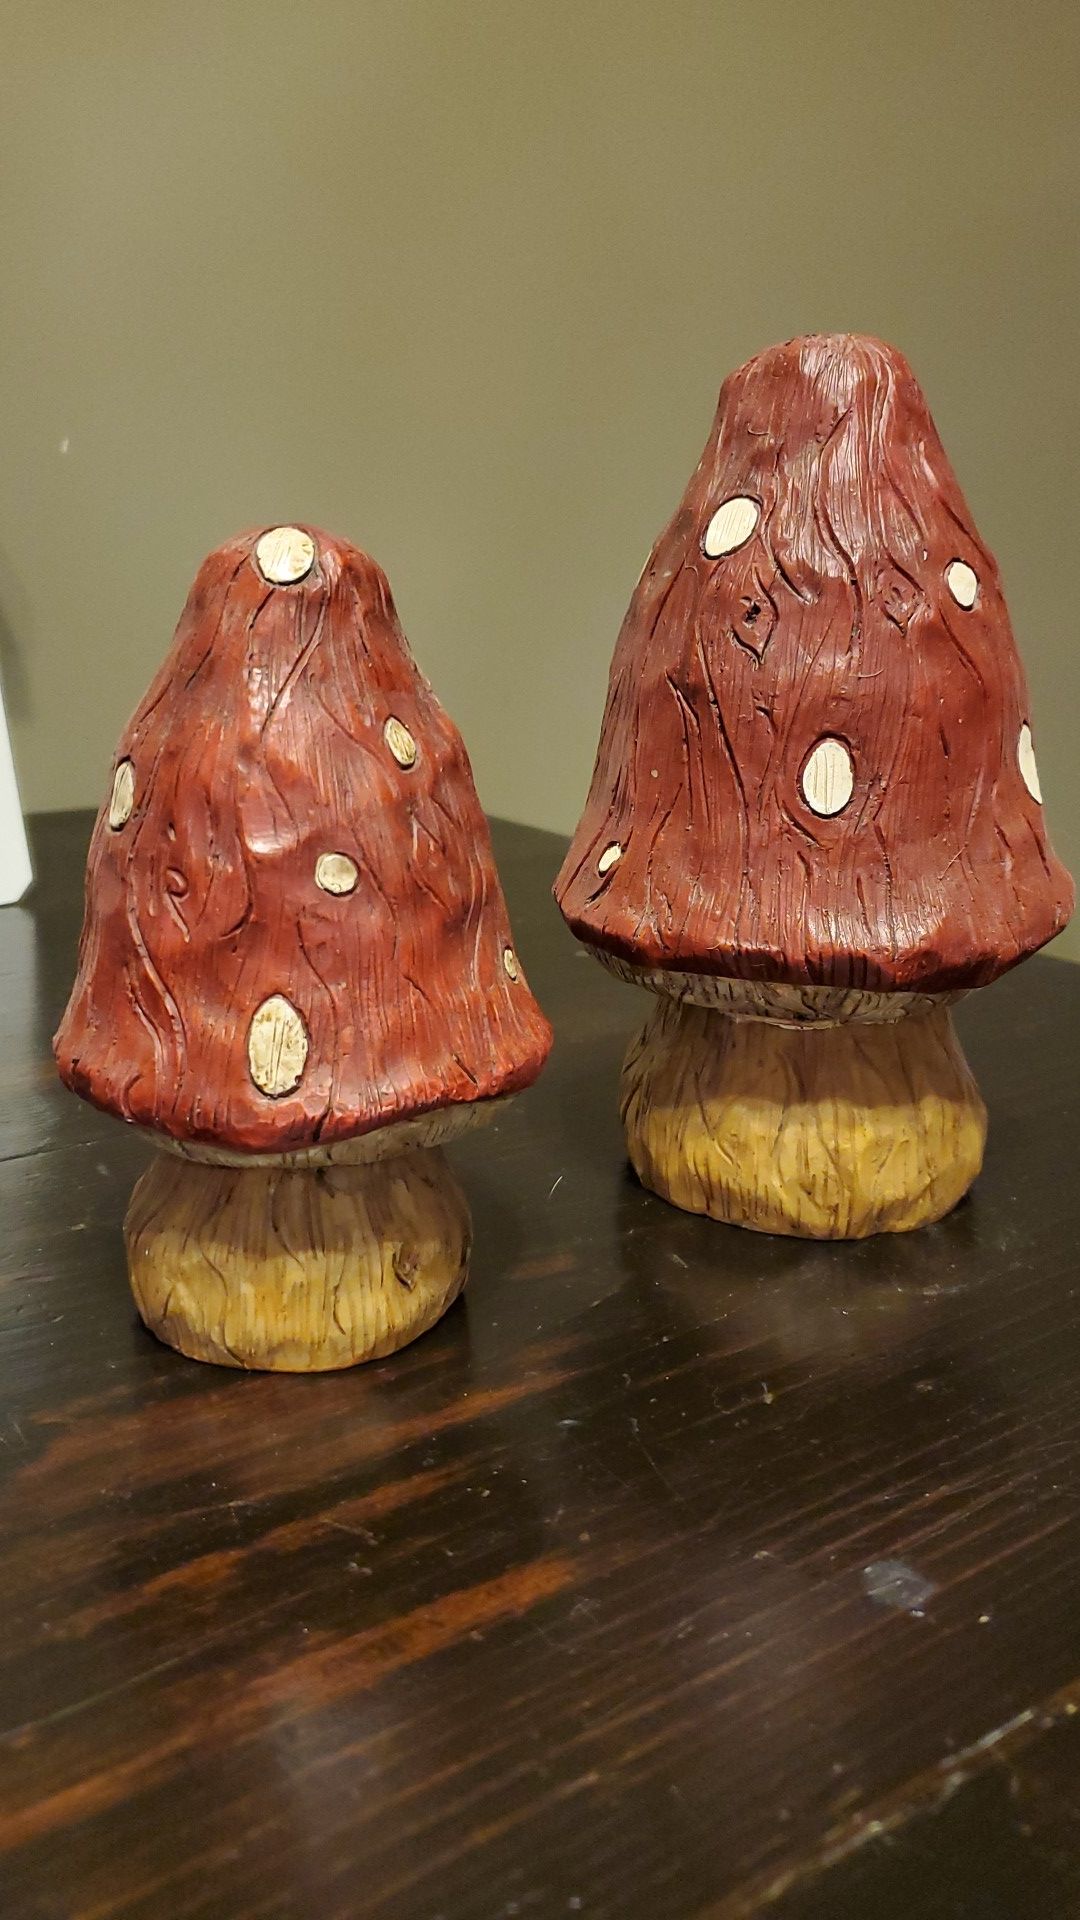 Decorative Mushrooms